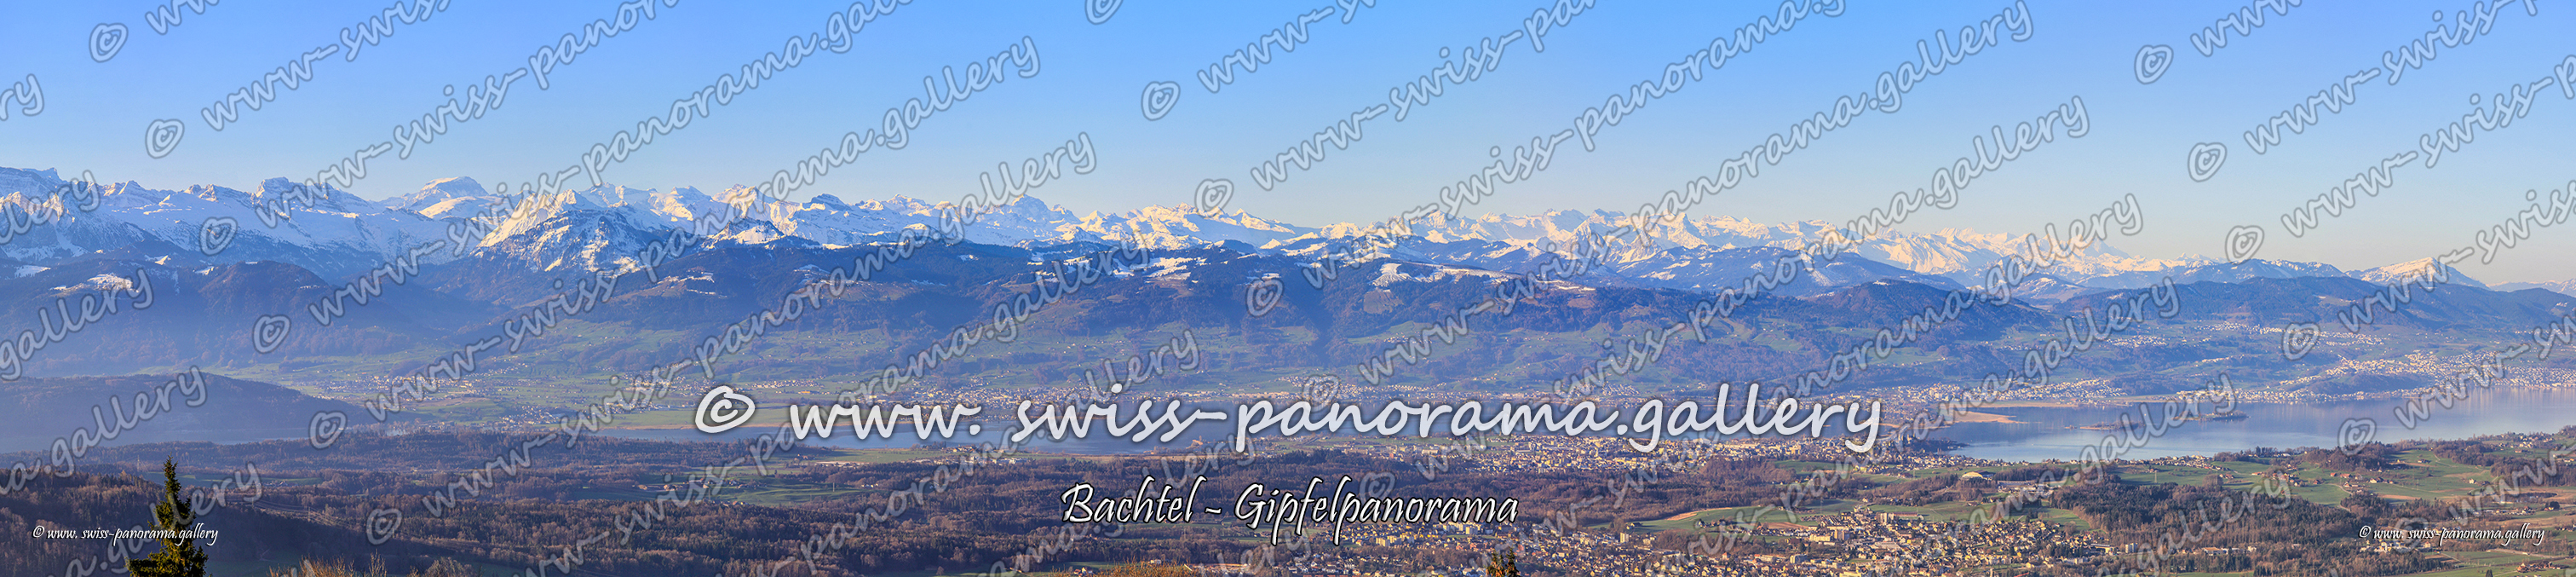 Switzerland panorama Bachtel